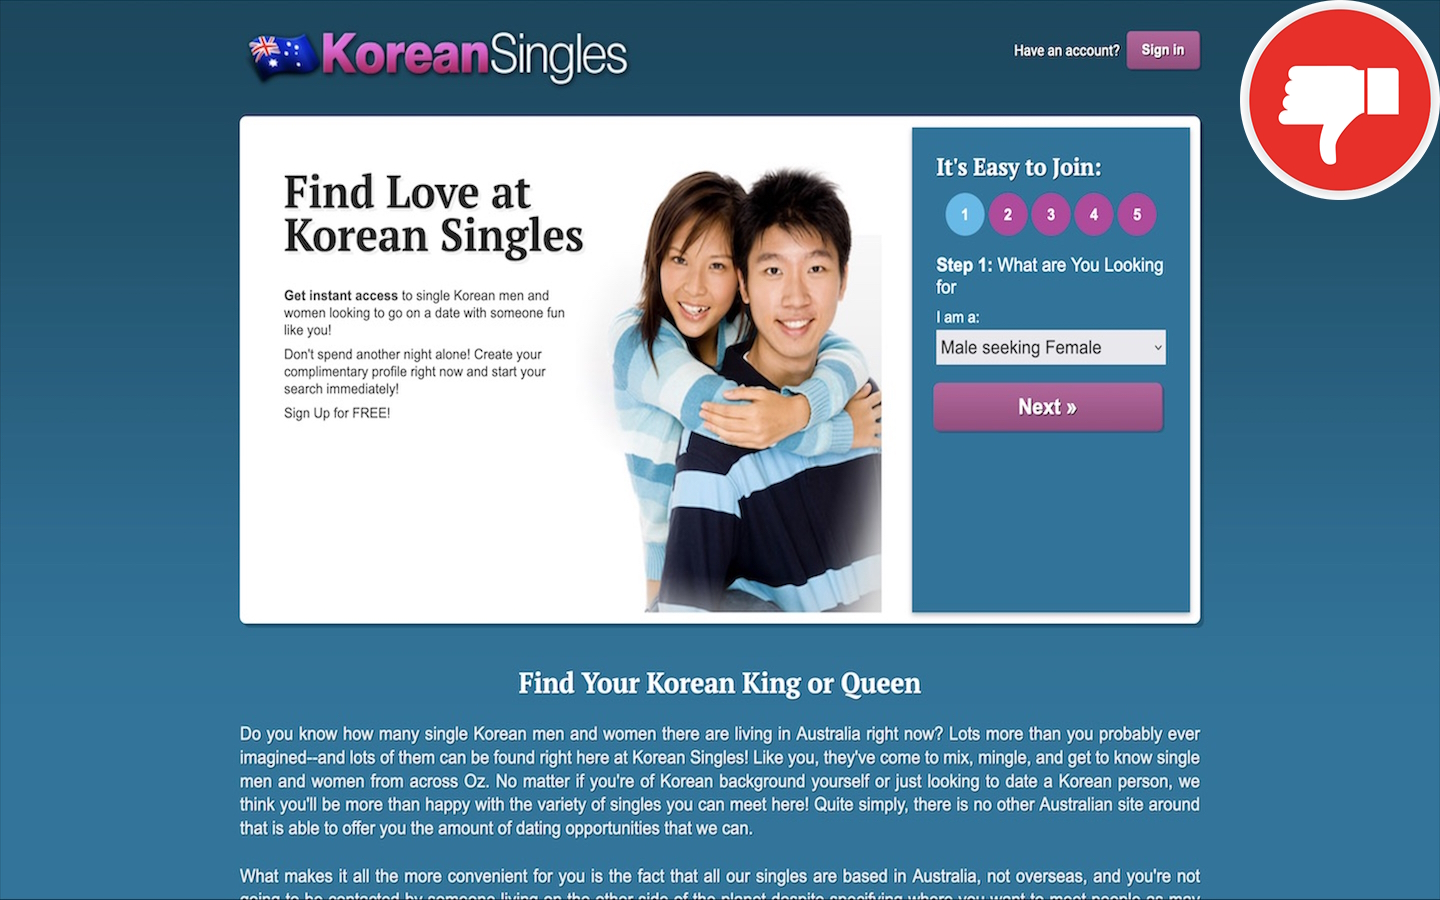 Review KoreanSingles.com.au Scam